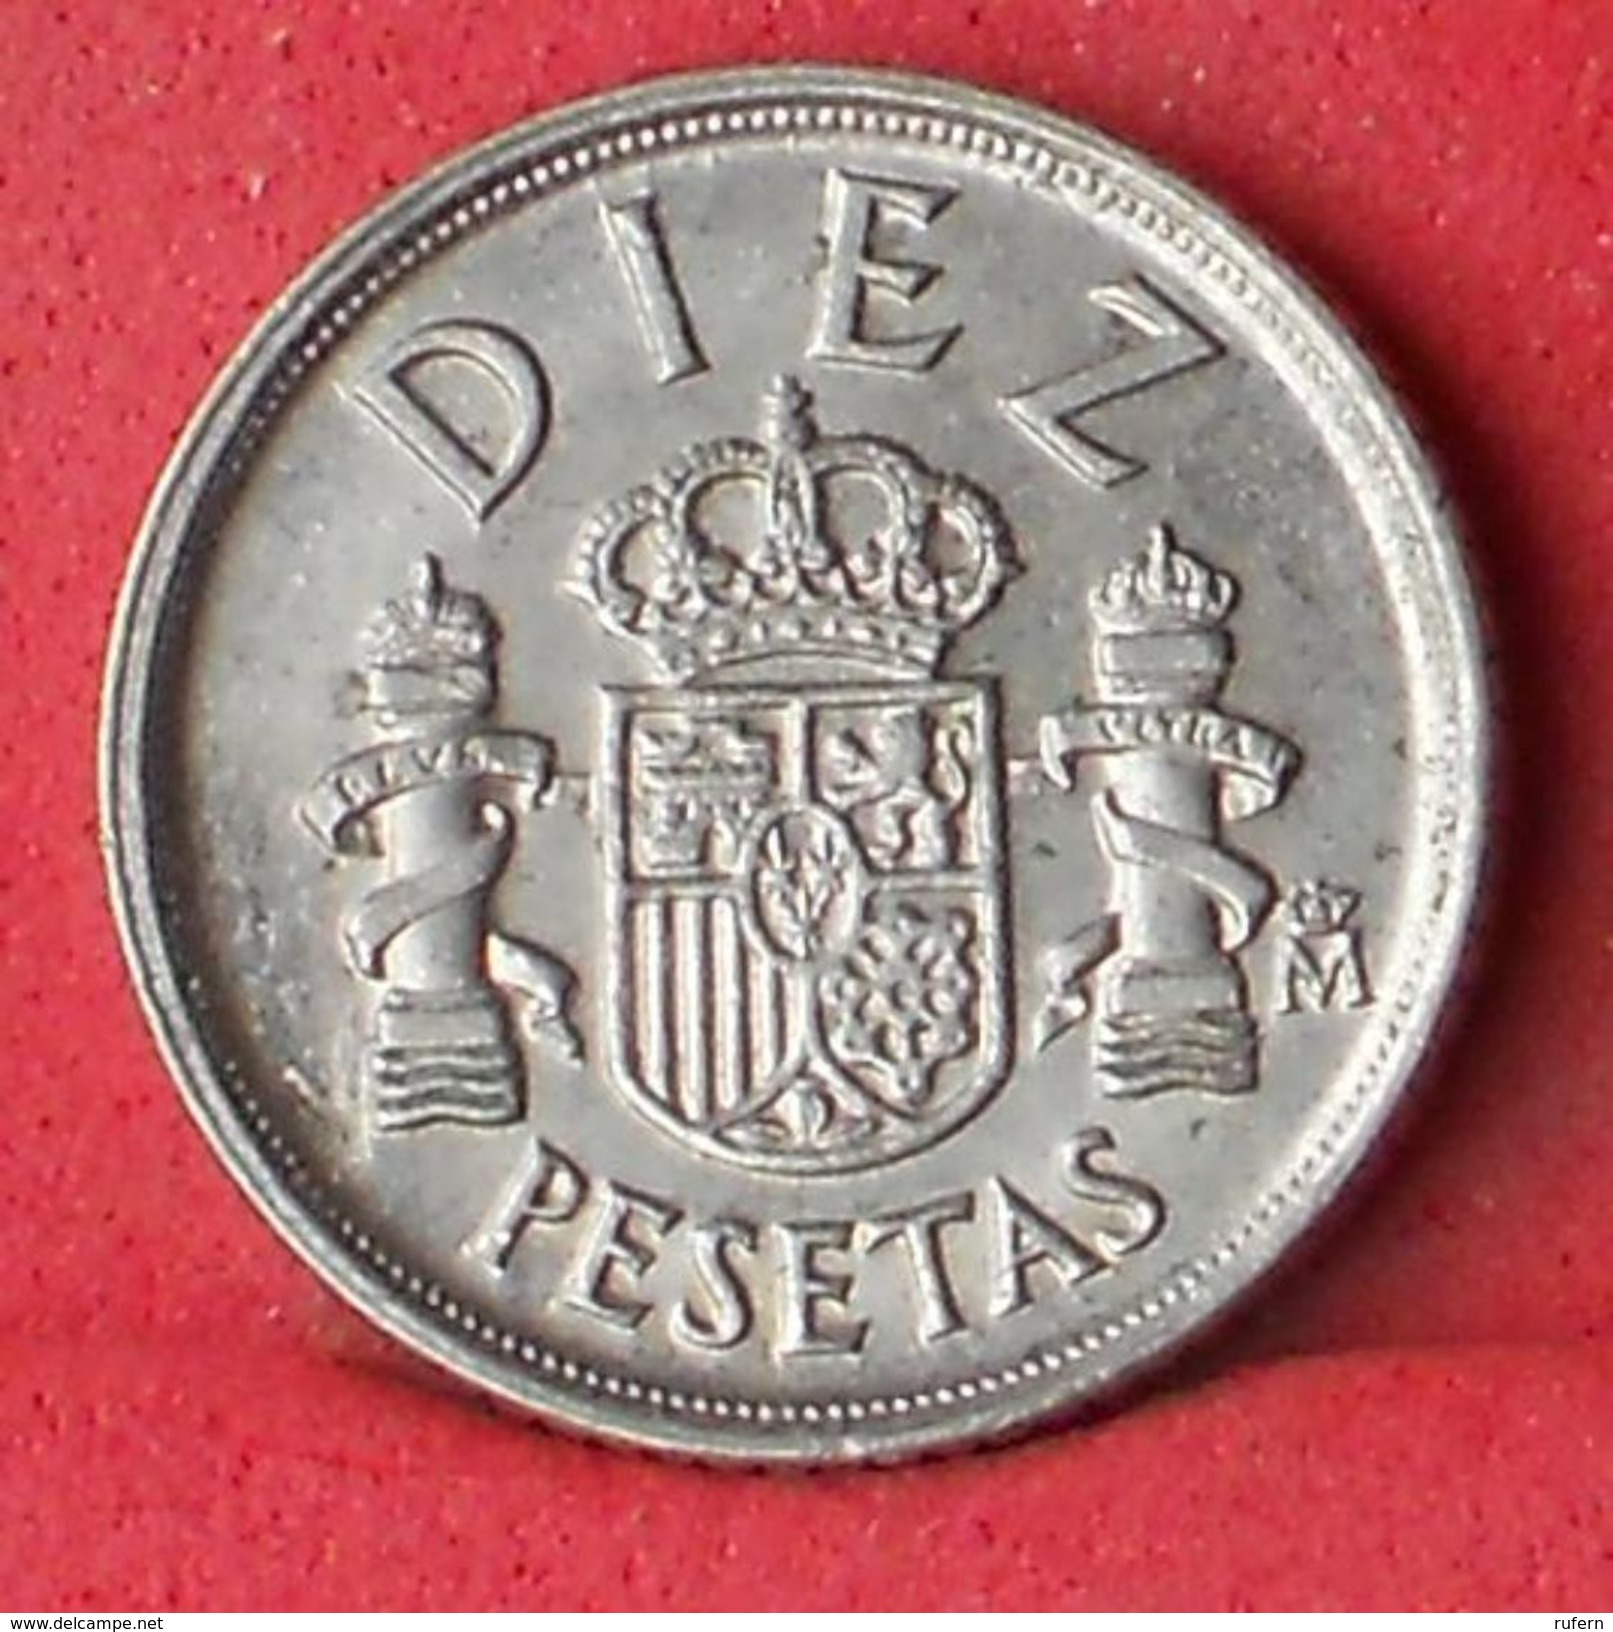 SPAIN 10 PESETAS 1984 - KM# 827 - (Nº18505) - 10 Pesetas